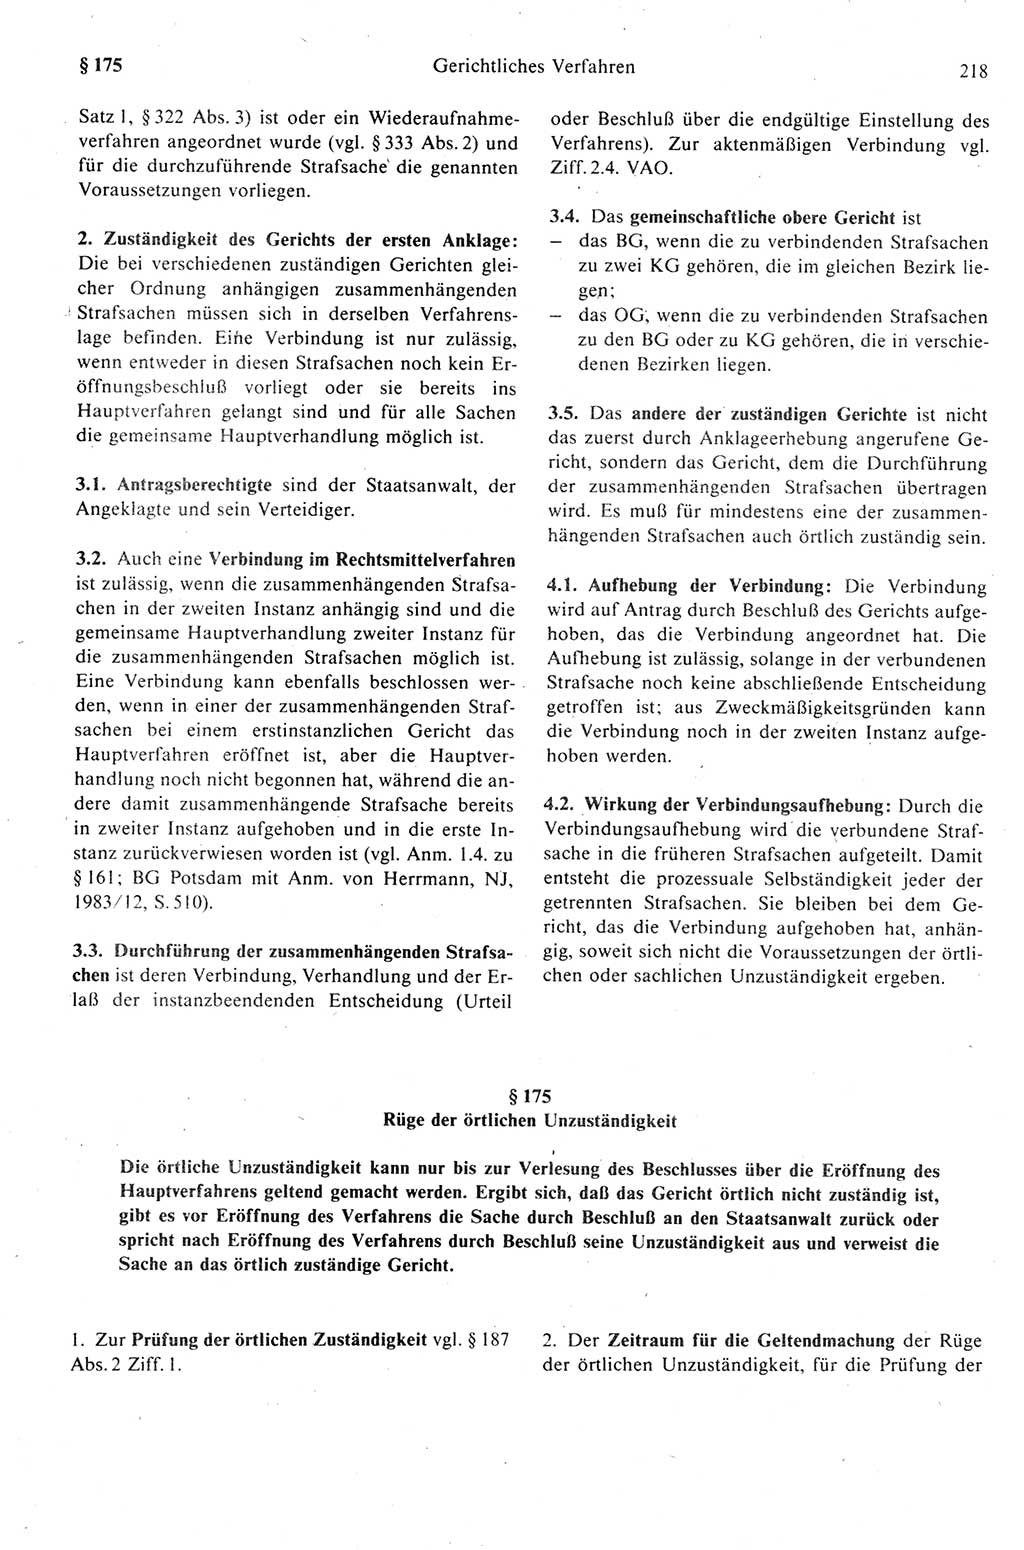 Strafprozeßrecht der DDR (Deutsche Demokratische Republik), Kommentar zur Strafprozeßordnung (StPO) 1989, Seite 218 (Strafprozeßr. DDR Komm. StPO 1989, S. 218)